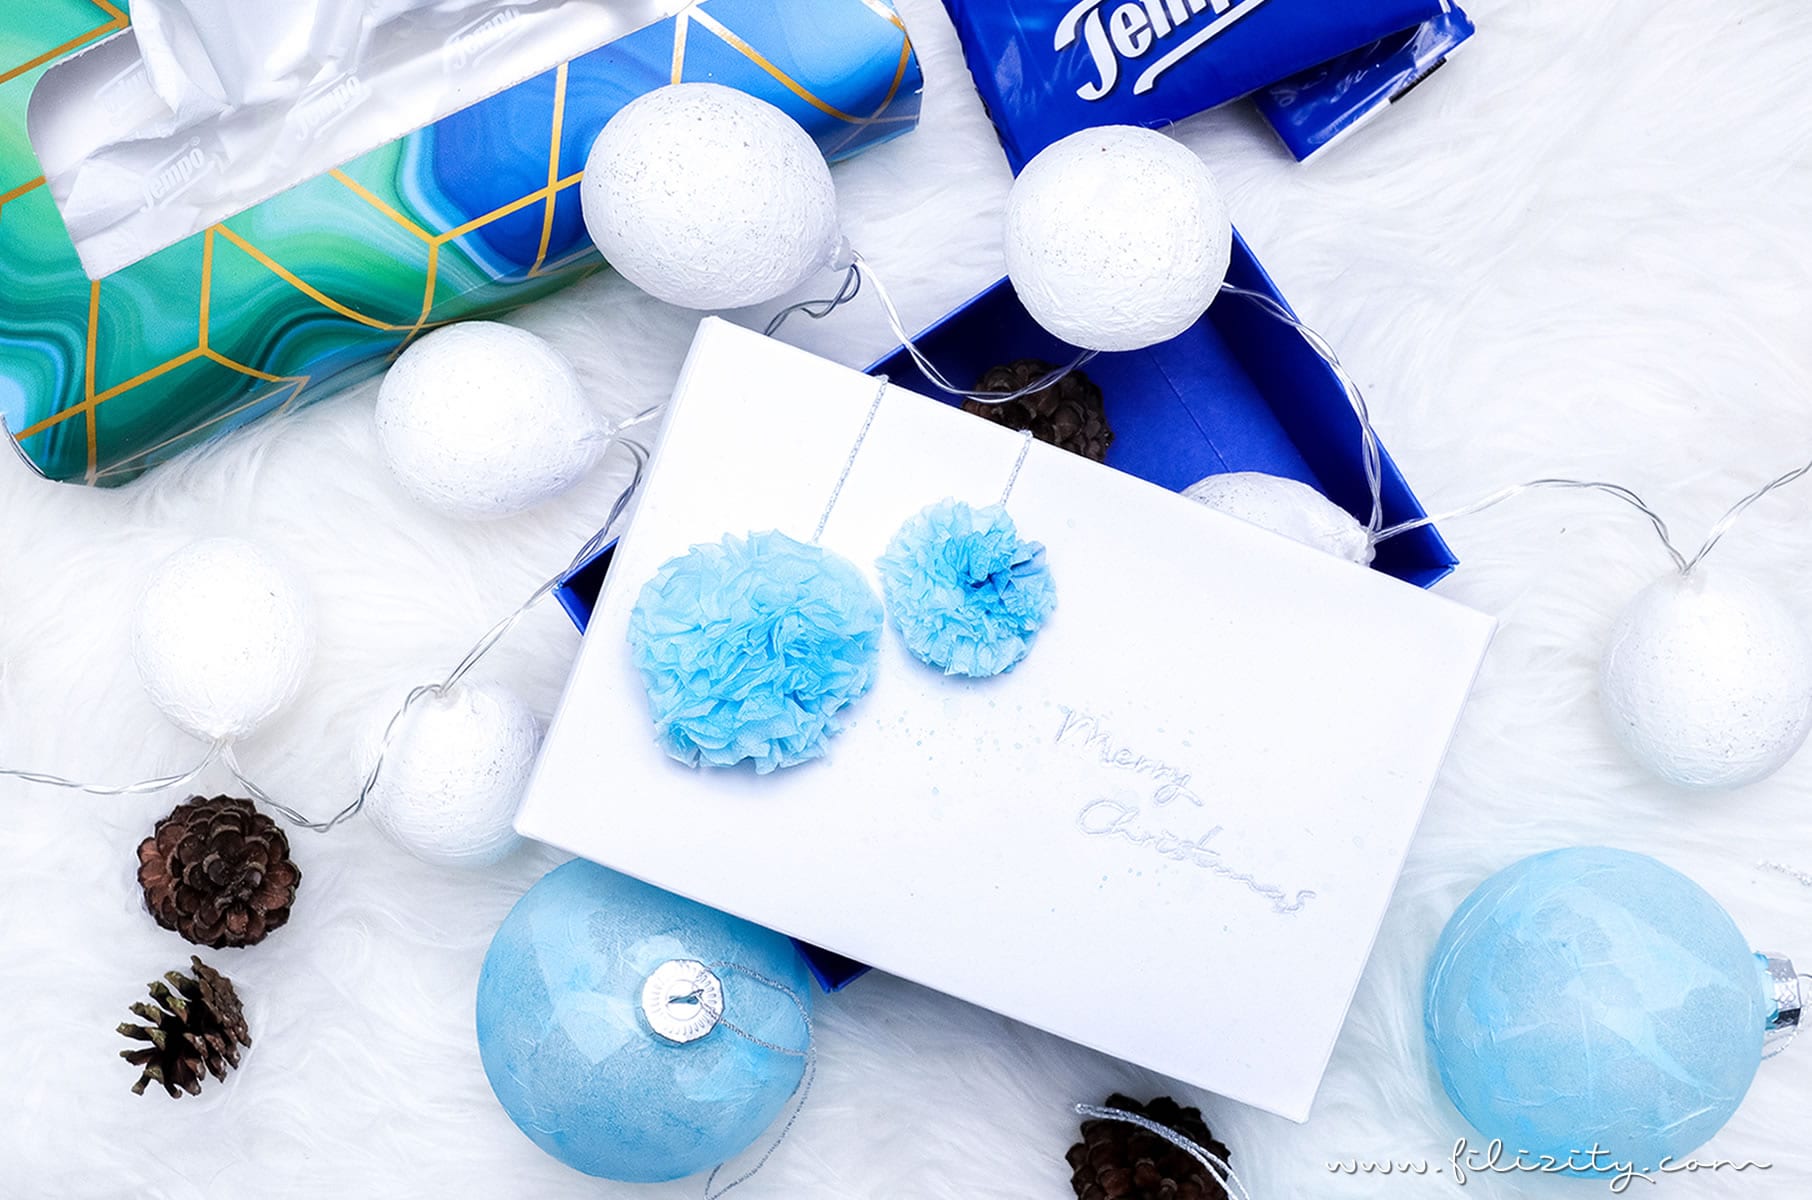 3 weihnachtliche DIY-Ideen mit Taschentüchern | Lichterkette, Christbaumkugeln mit Serviettentechnik & Geschenkverpackung mit Bommeln selber machen | Filizity.com | DIY-Blog aus dem Rheinland #weihnachten #tempo